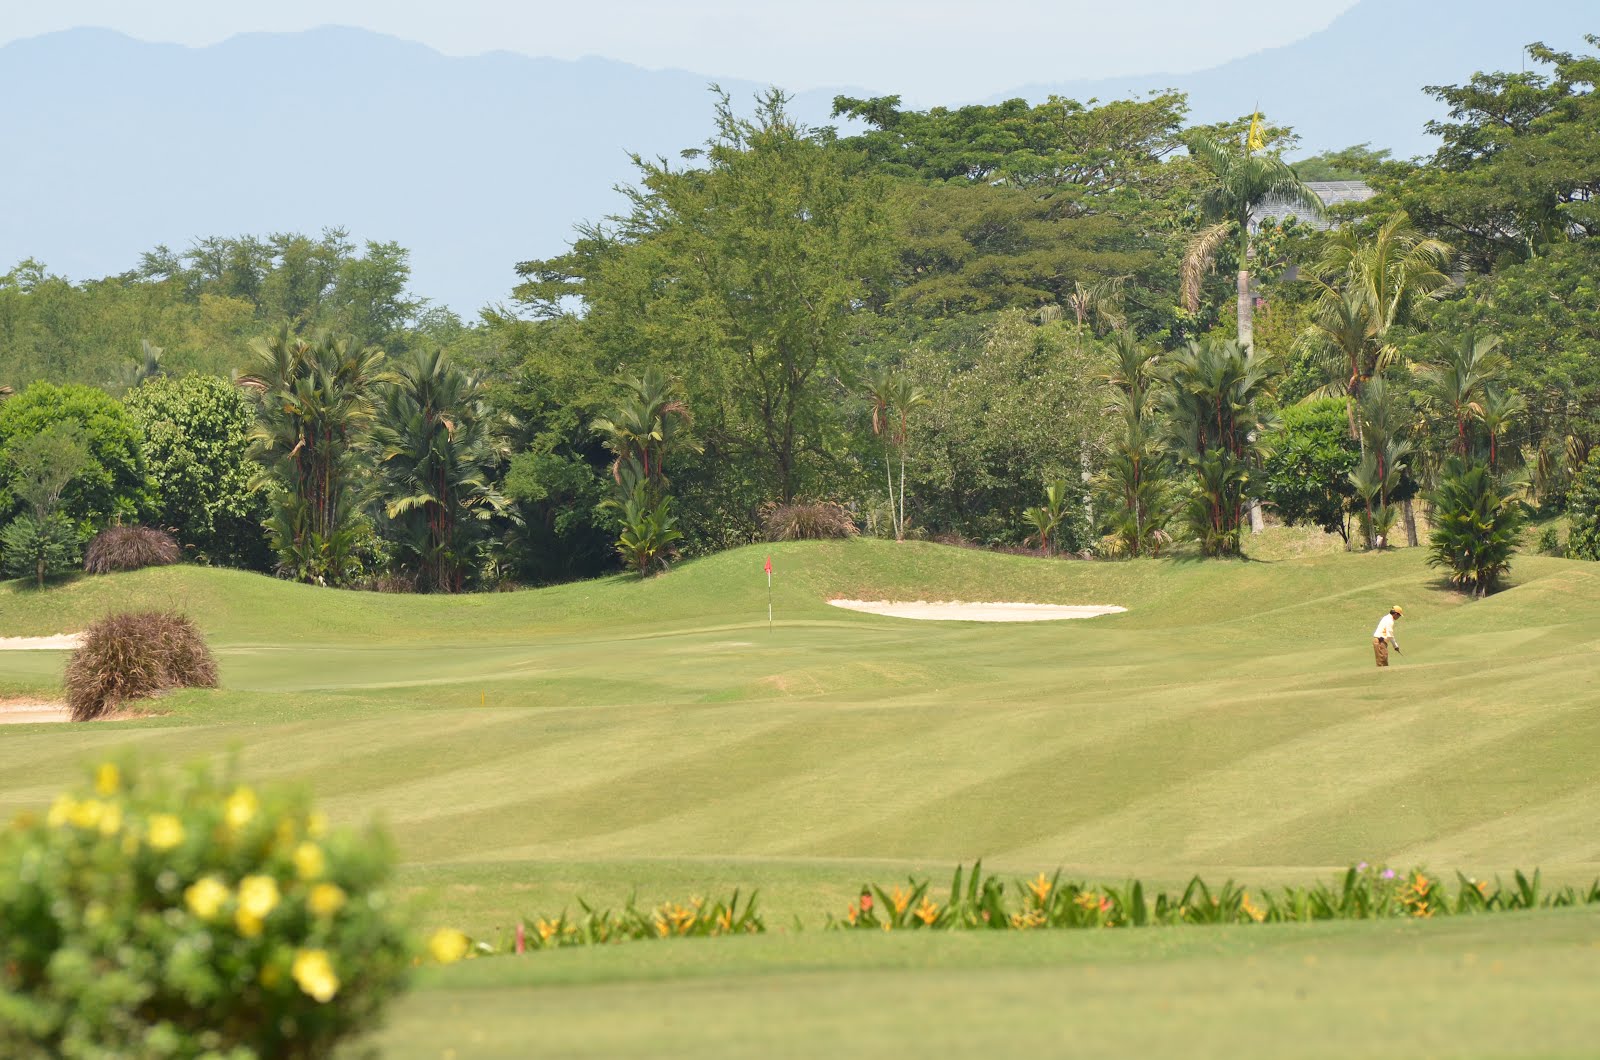 Royal sumatra golf course medan